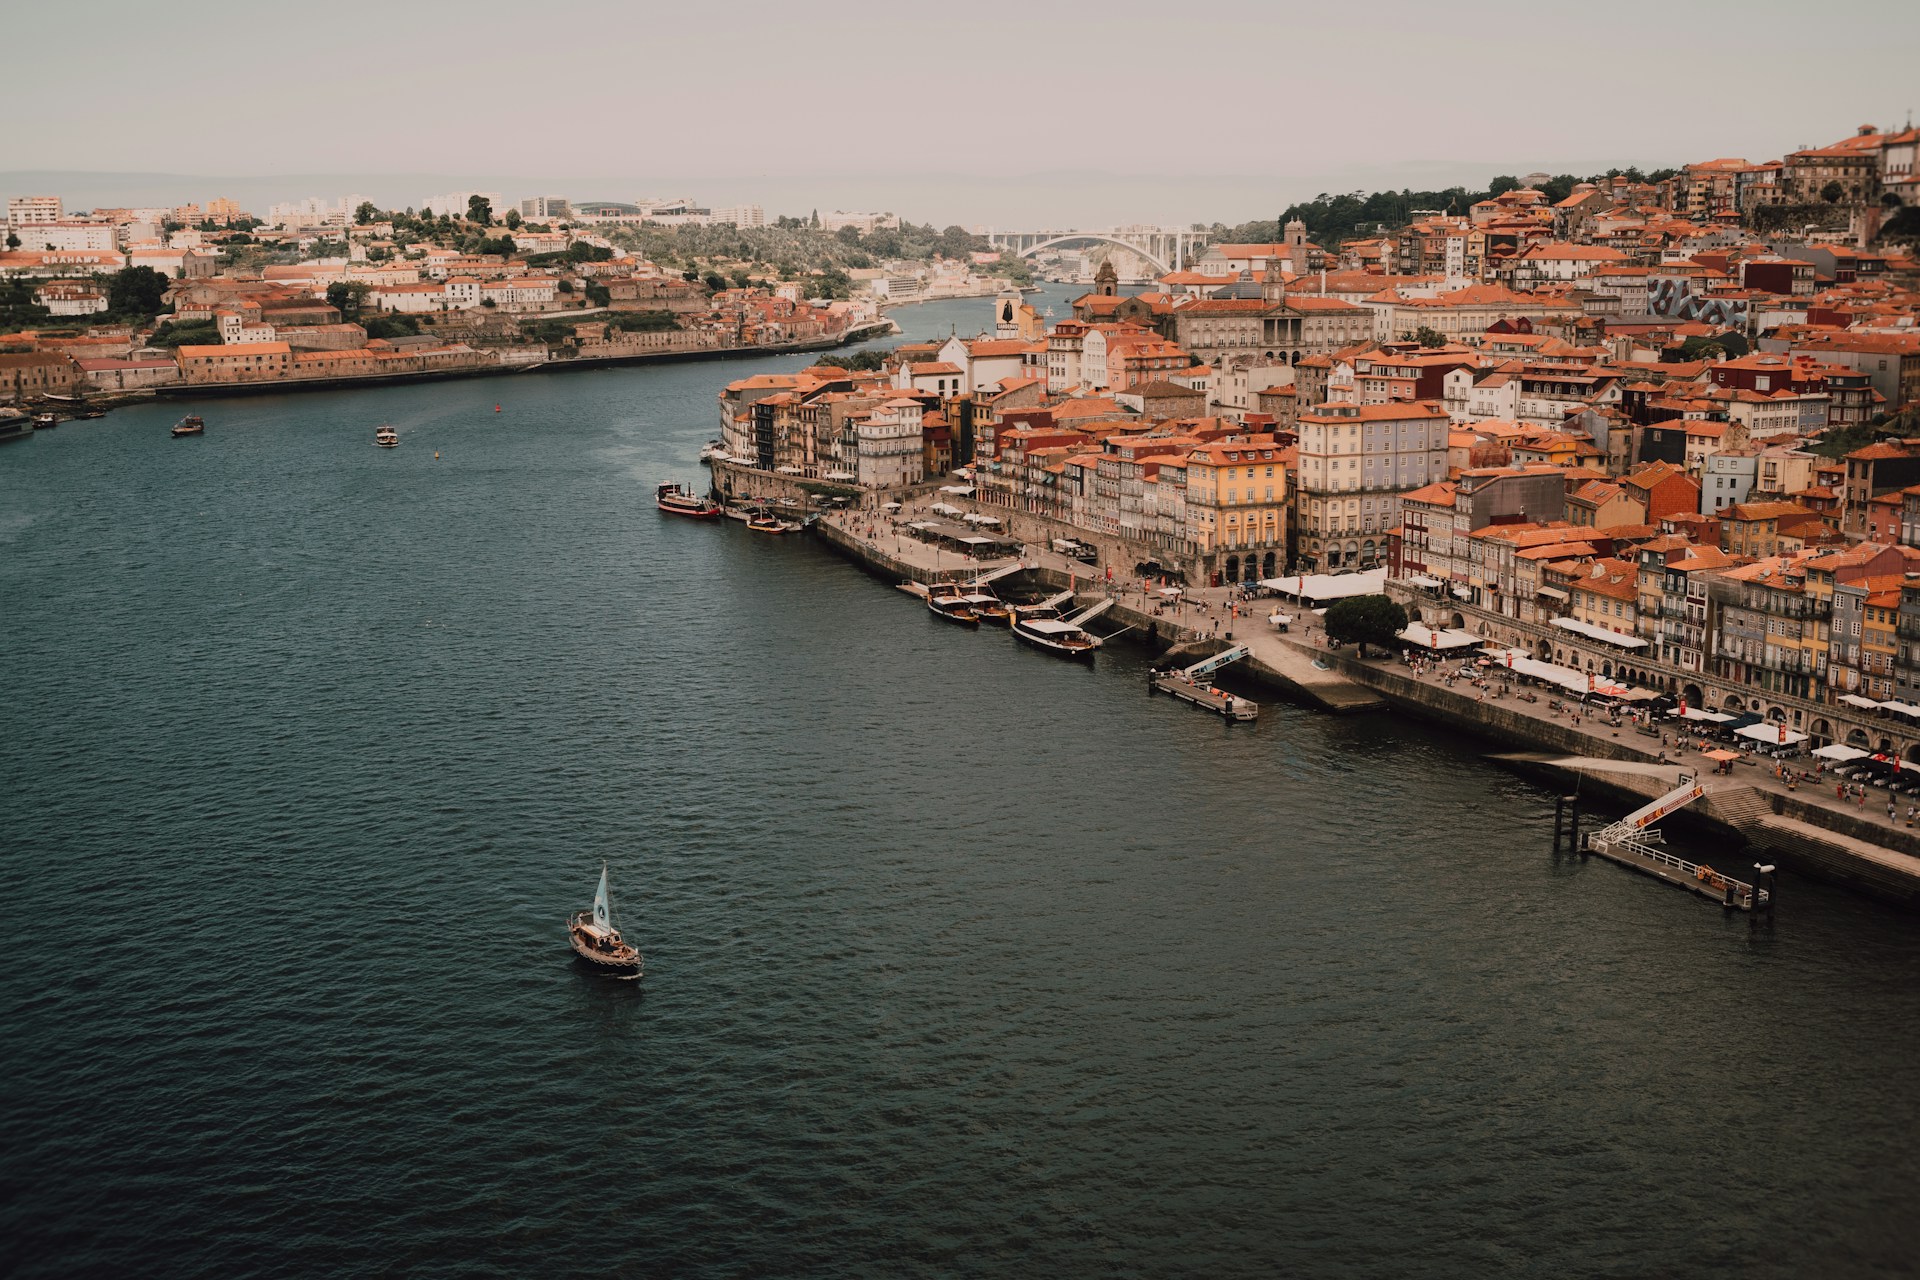 DIG-IN PRO: 5 Sugestões para todas as ocasiões – Porto